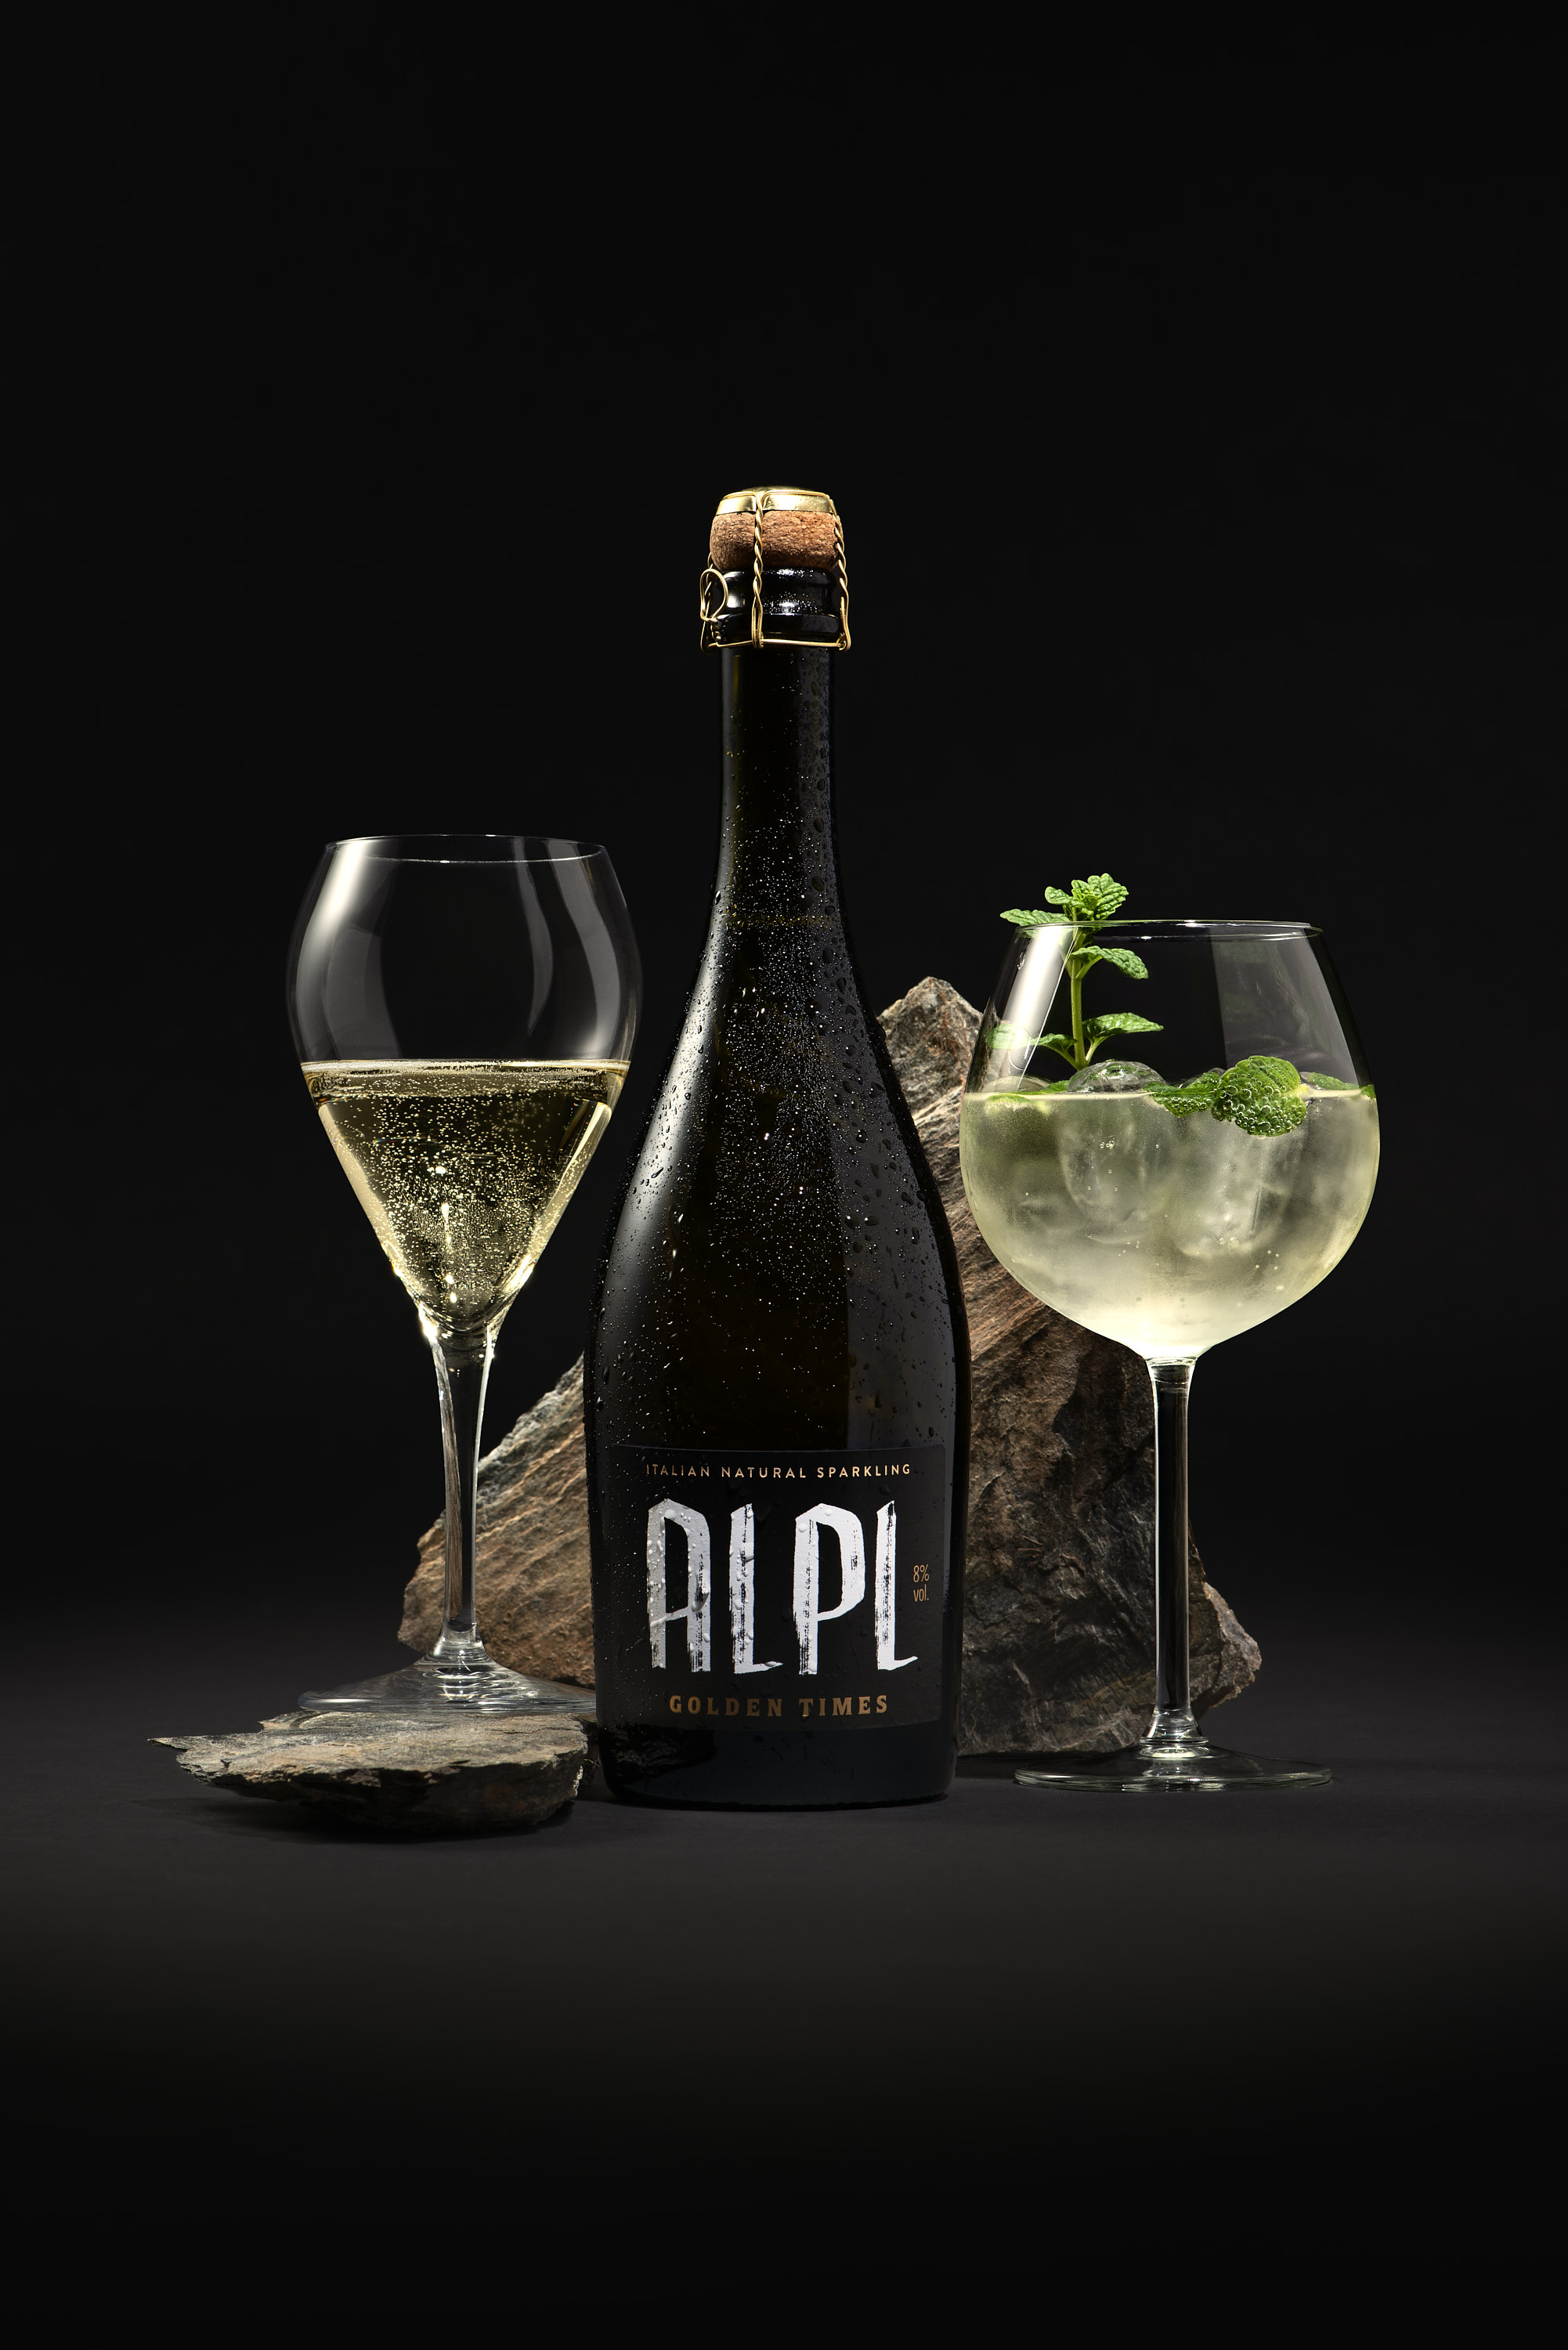 ALPL Apfelcider - Italian Natural Sparkling